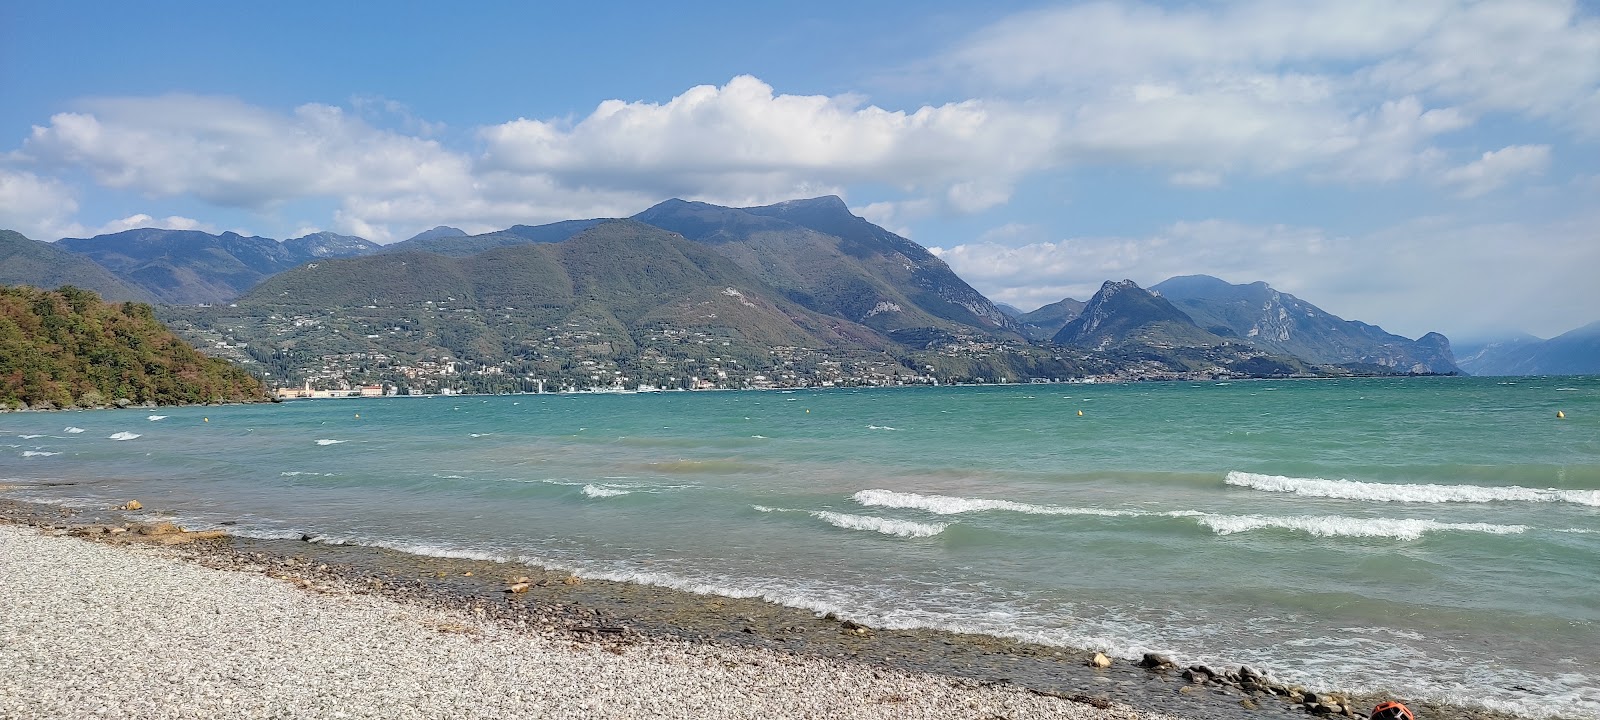 Foto van Spiaggia Baia del Vento met blauw puur water oppervlakte